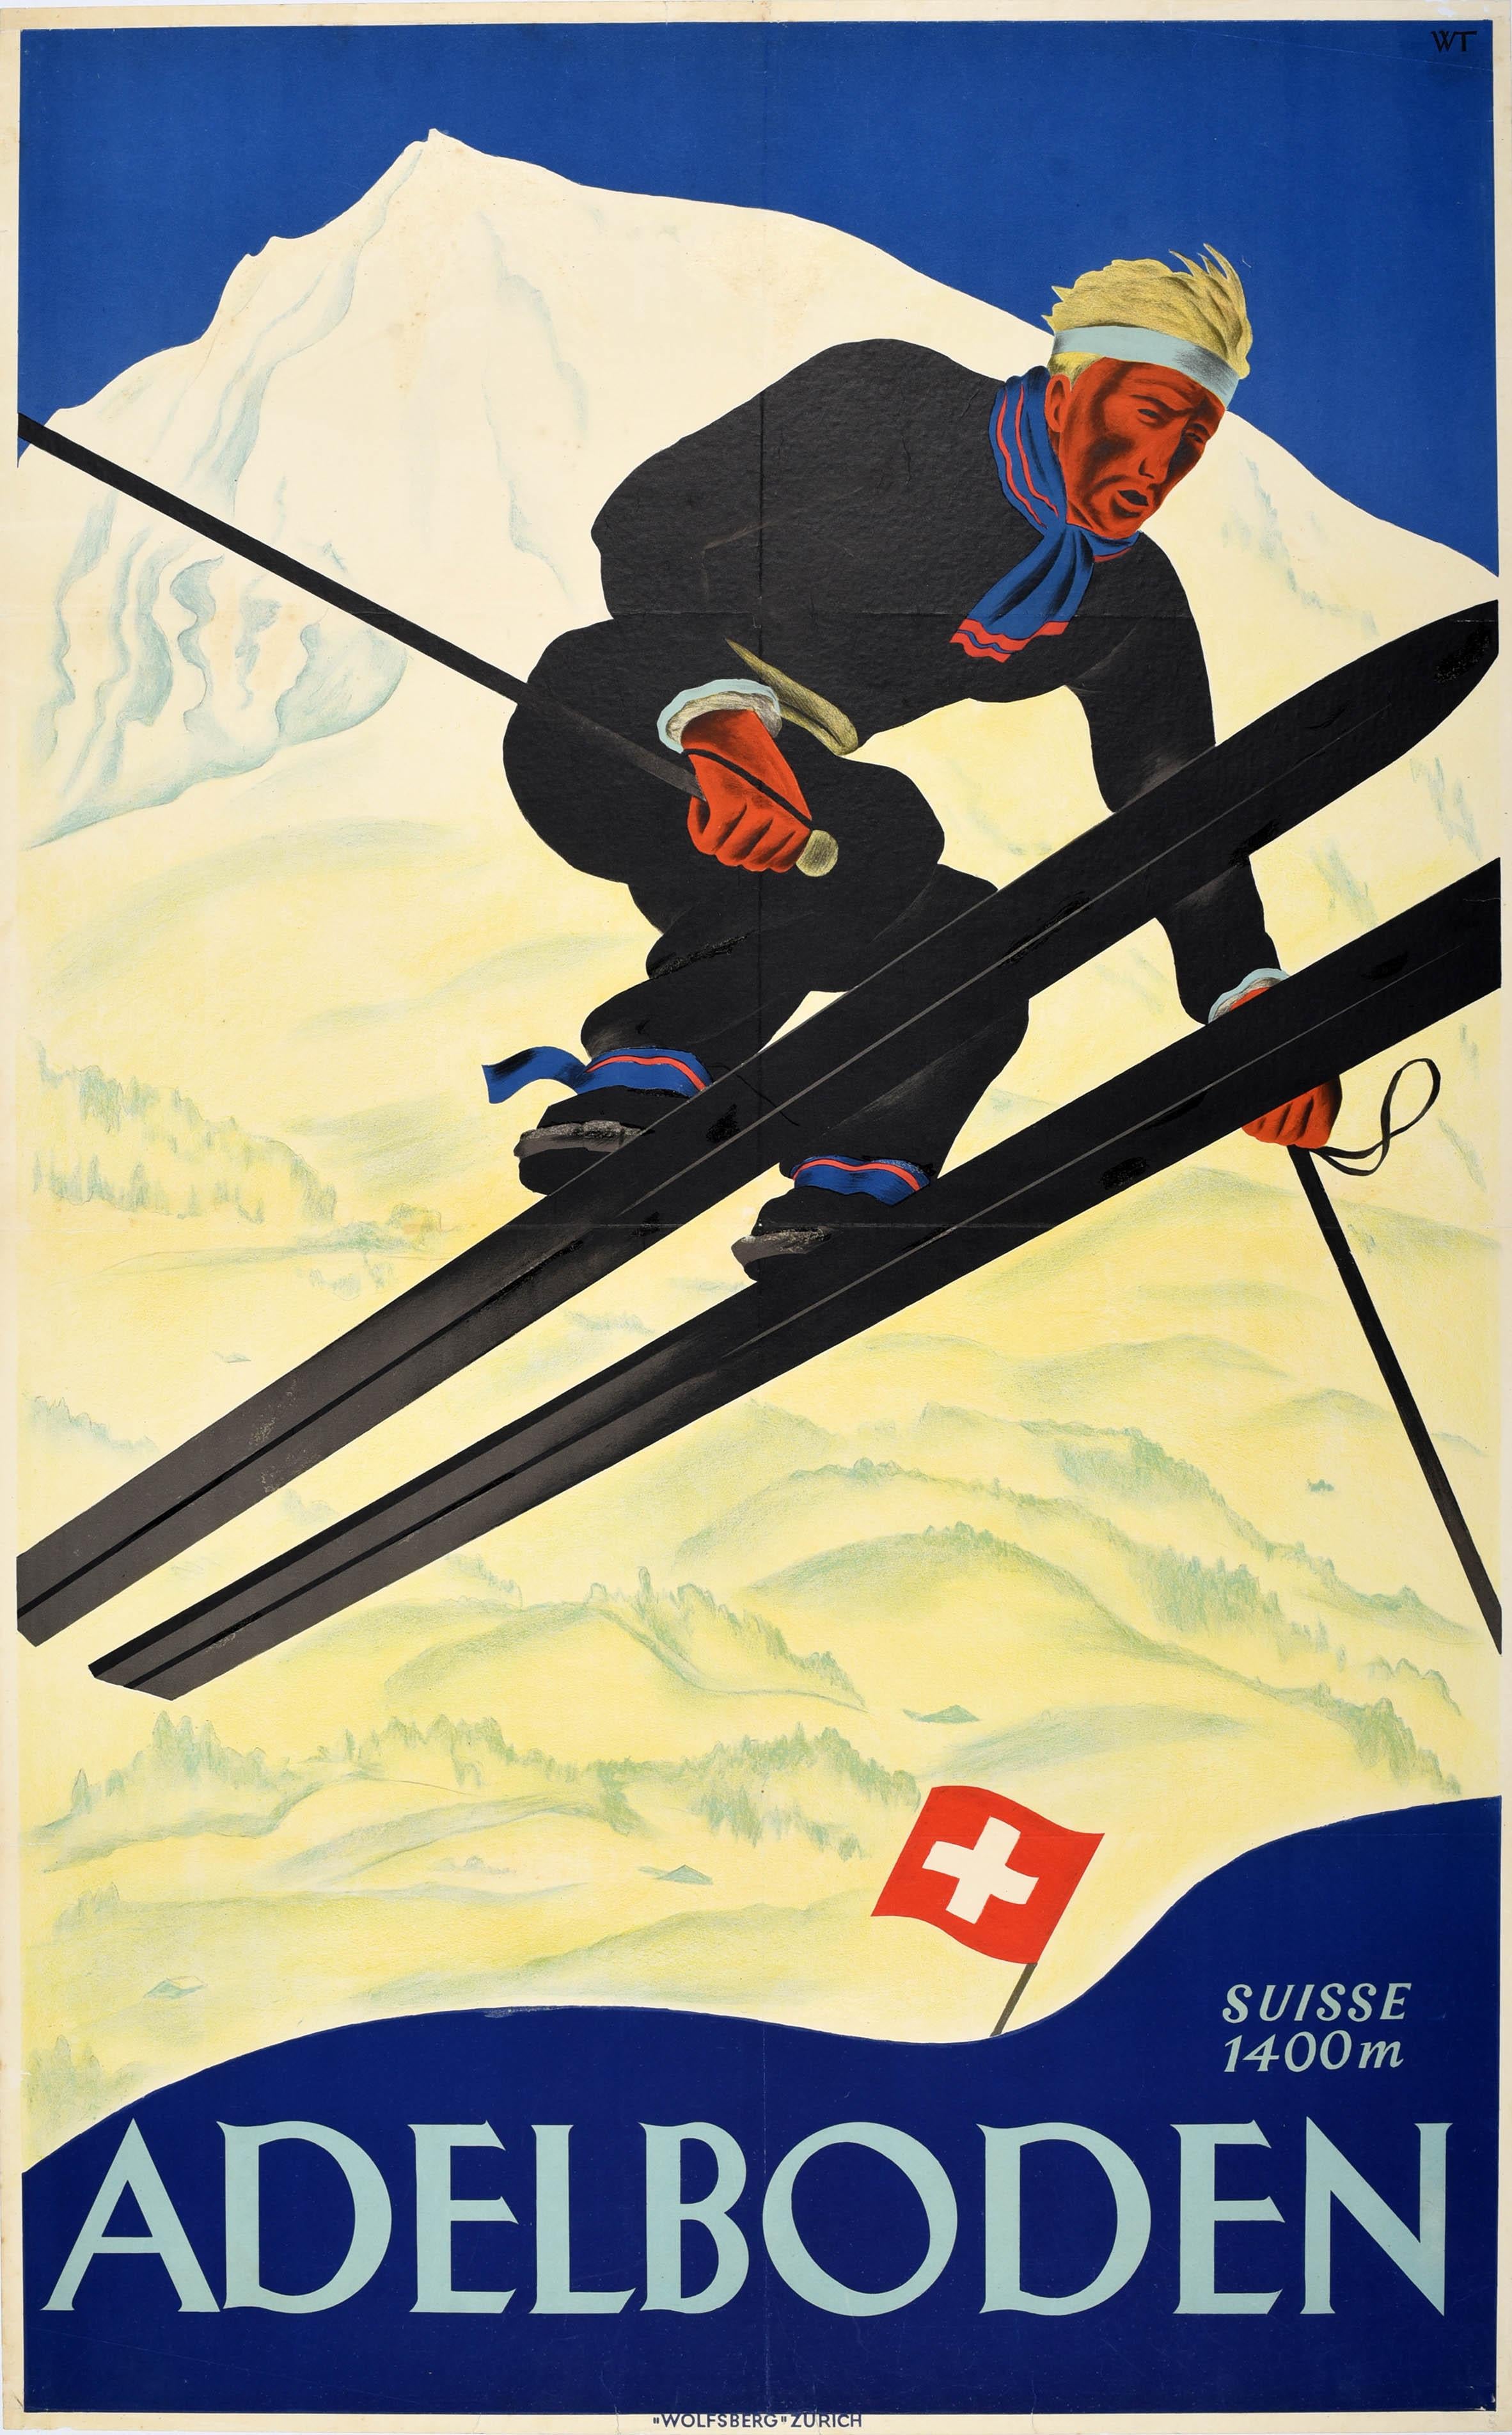 Willy Trapp Print - Original Vintage Swiss Skiing Poster Adelboden Switzerland Ski Jump Winter Sport